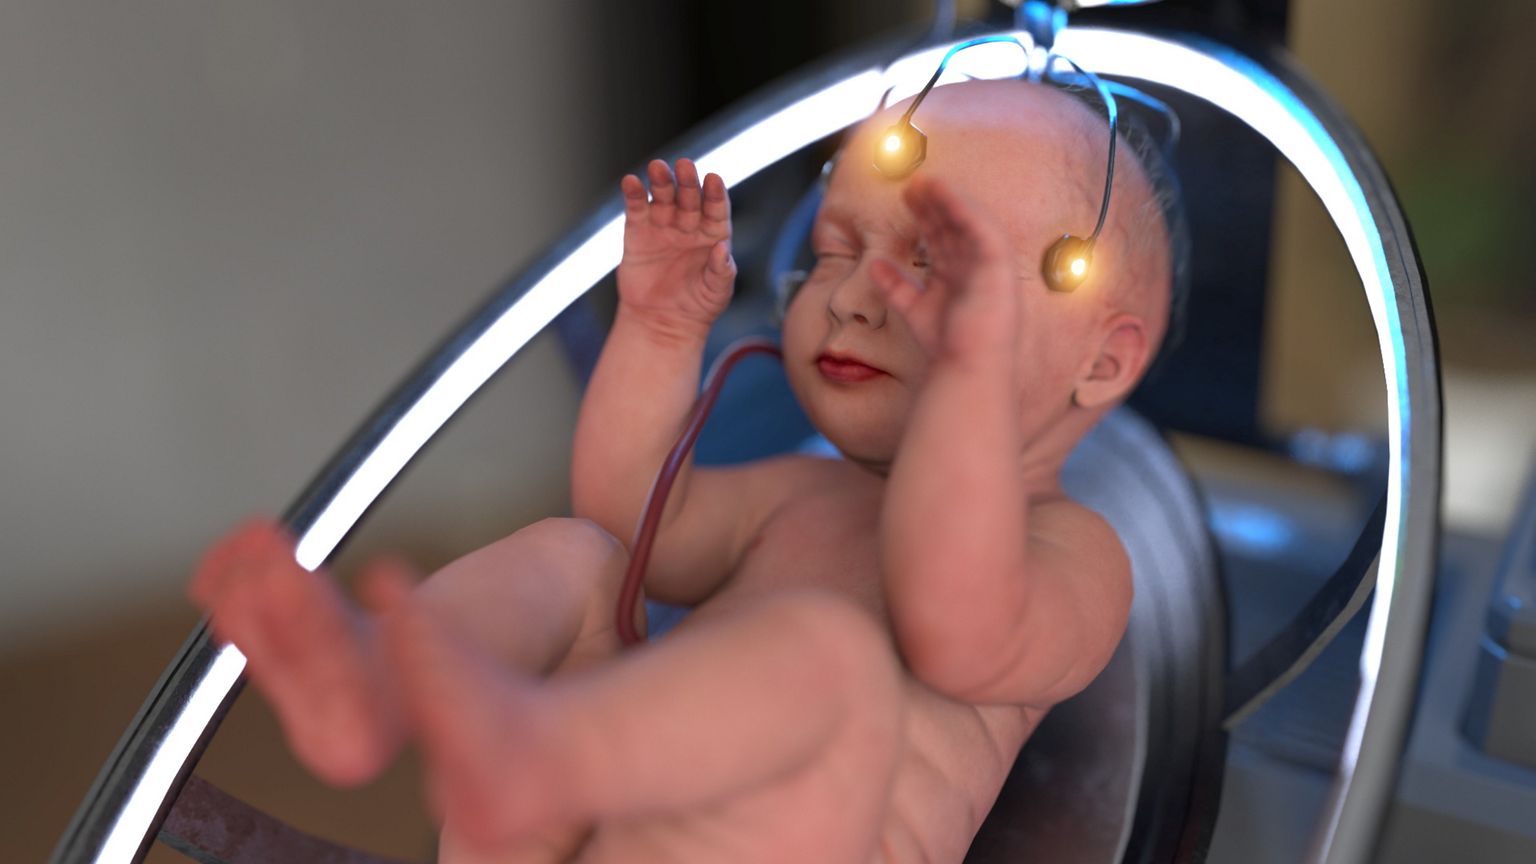 Pikaaegsel uurimustööl põhineva EctoLife tehnoloogia abil saaks luua 30 000 beebit aastas.